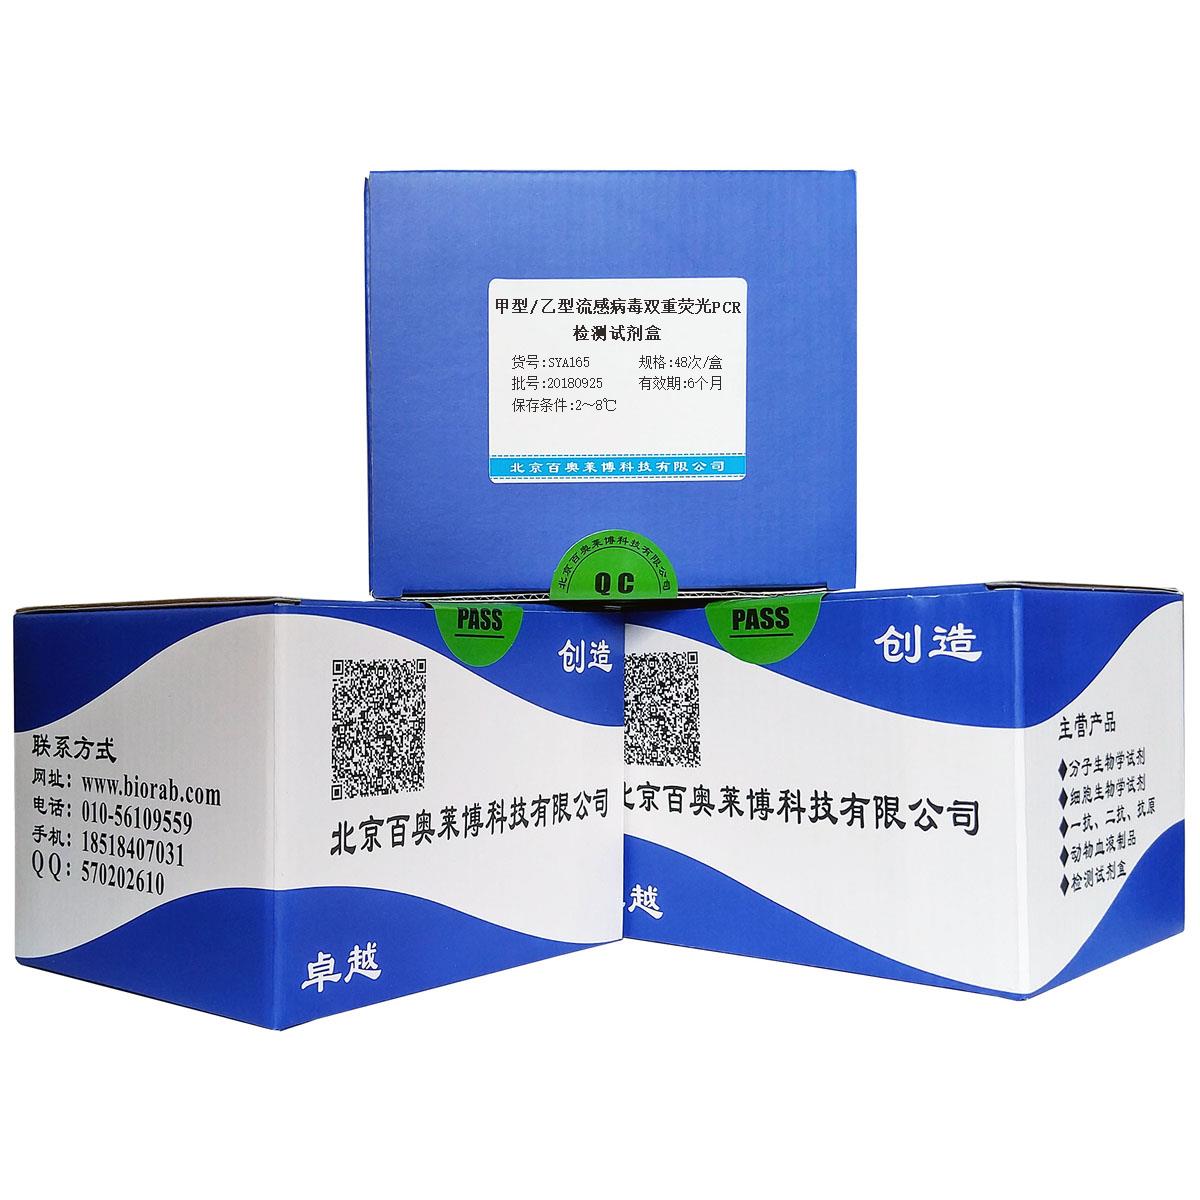 甲型/乙型流感病毒双重荧光PCR检测试剂盒